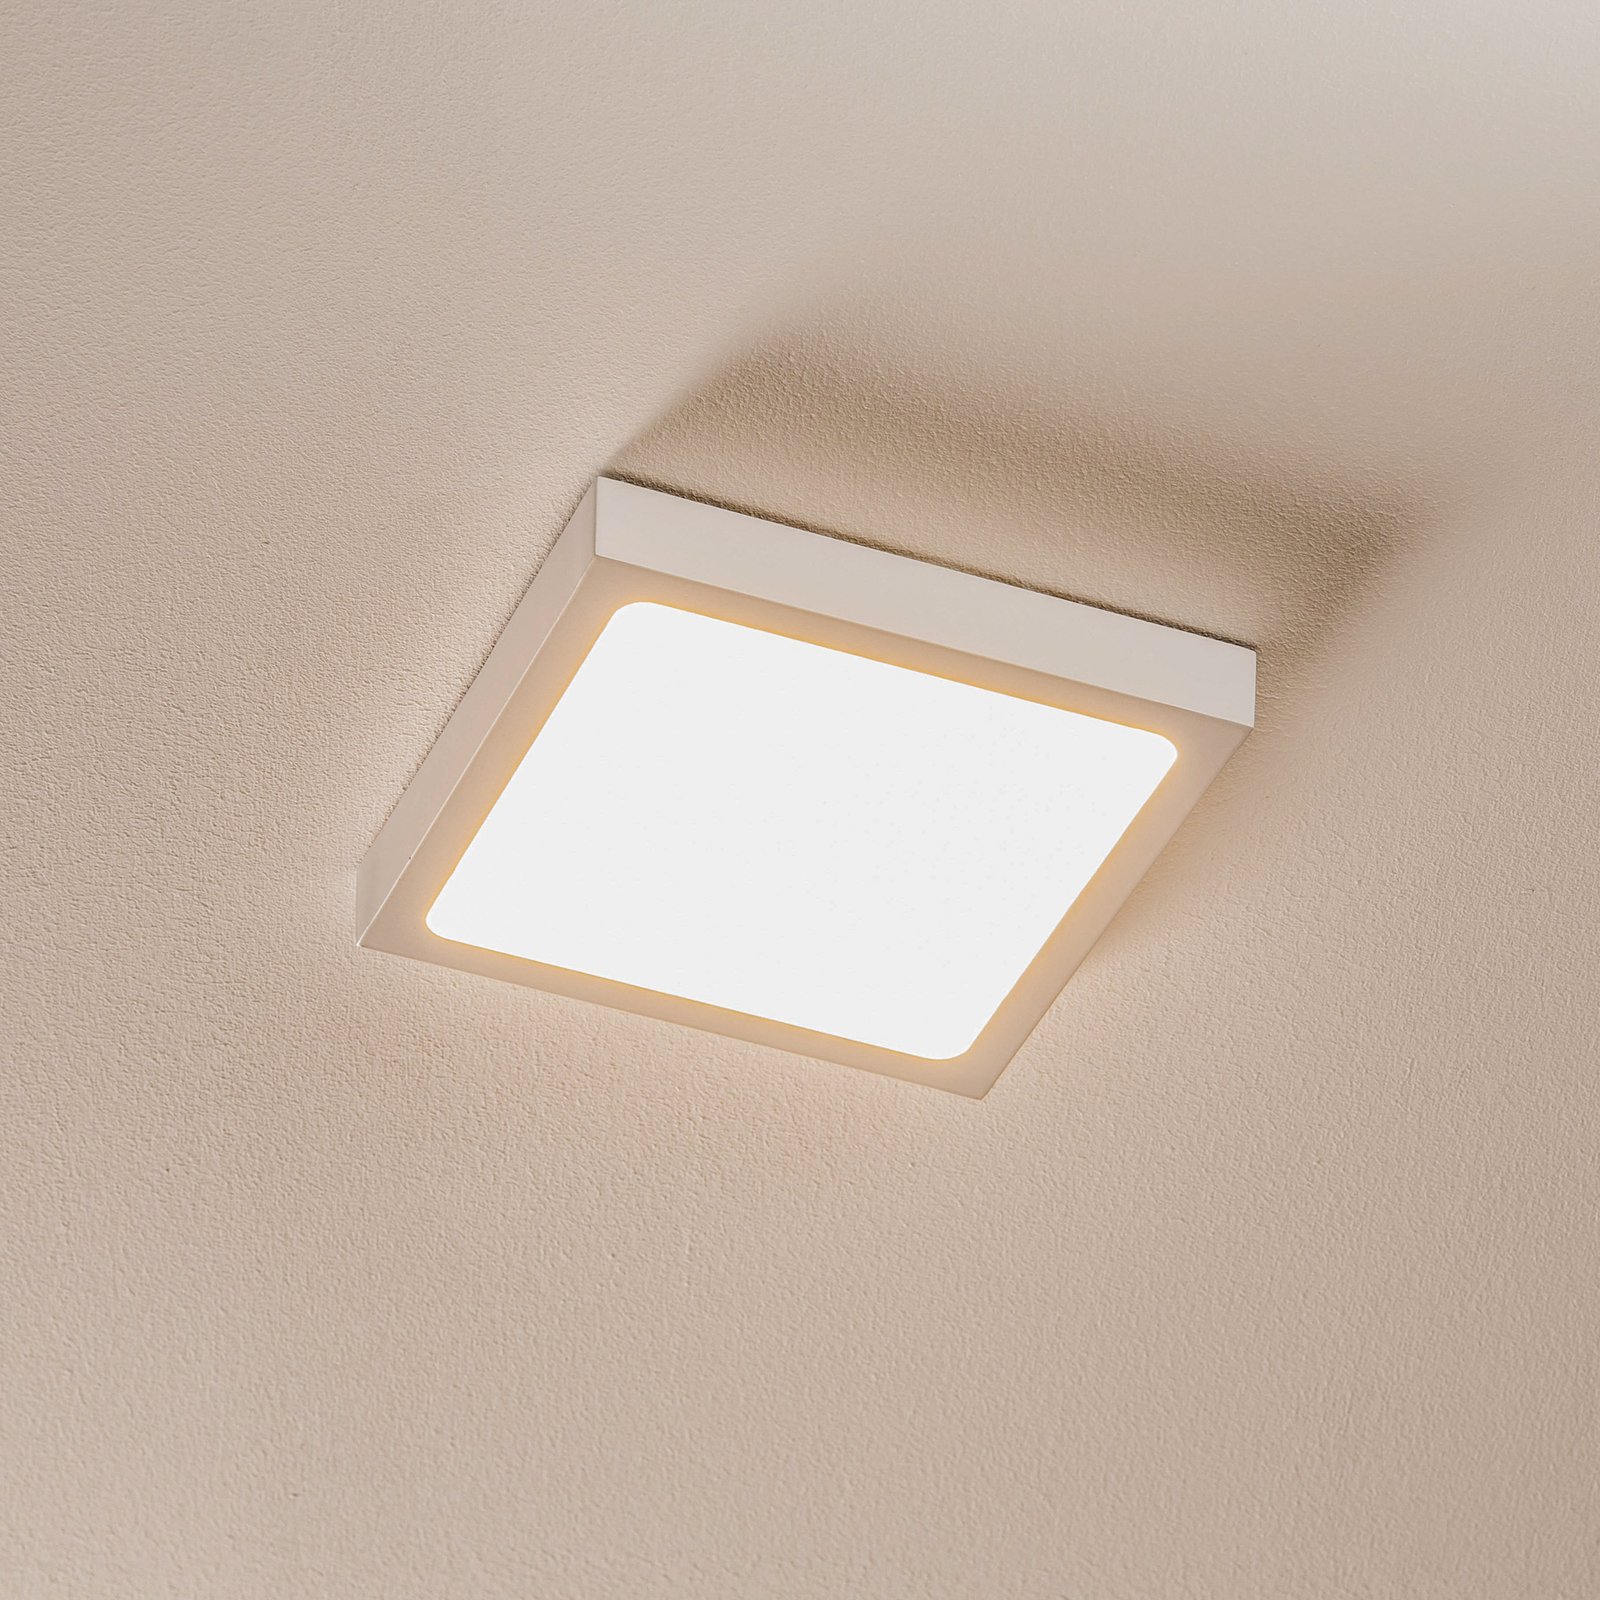 LED-vägglampa Vika, kvadrat, vit, 18 x 18 cm